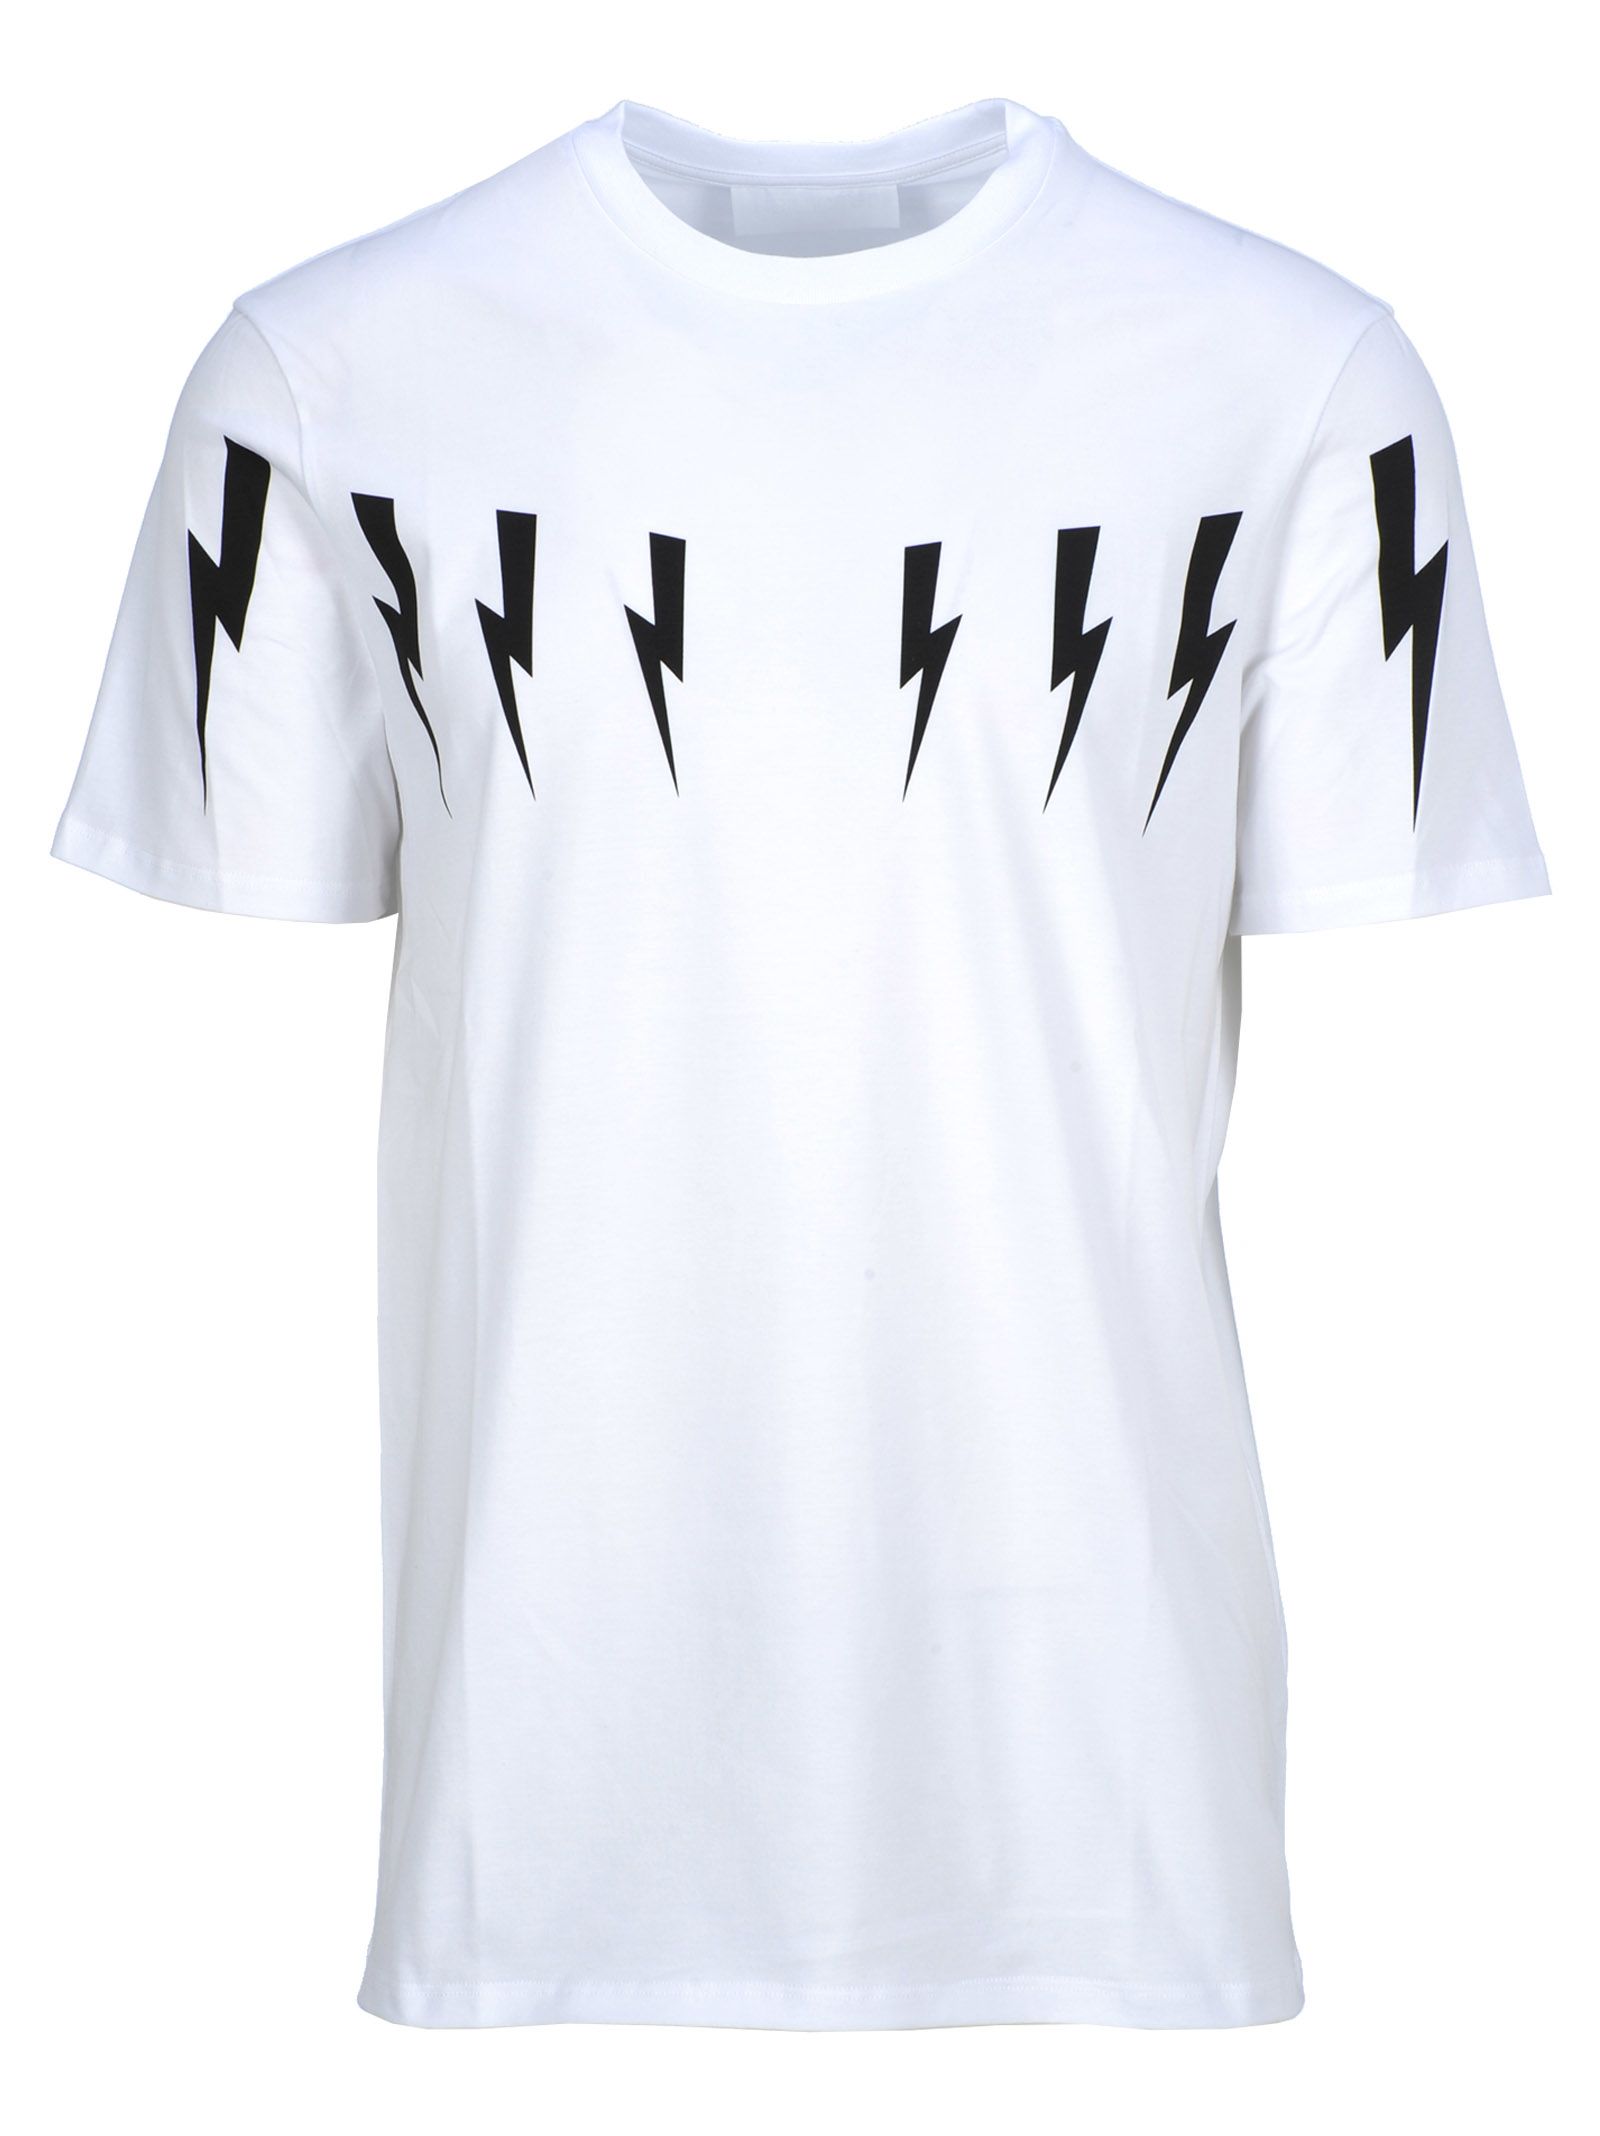 Neil Barrett Thunders Print T-shirt In White | ModeSens